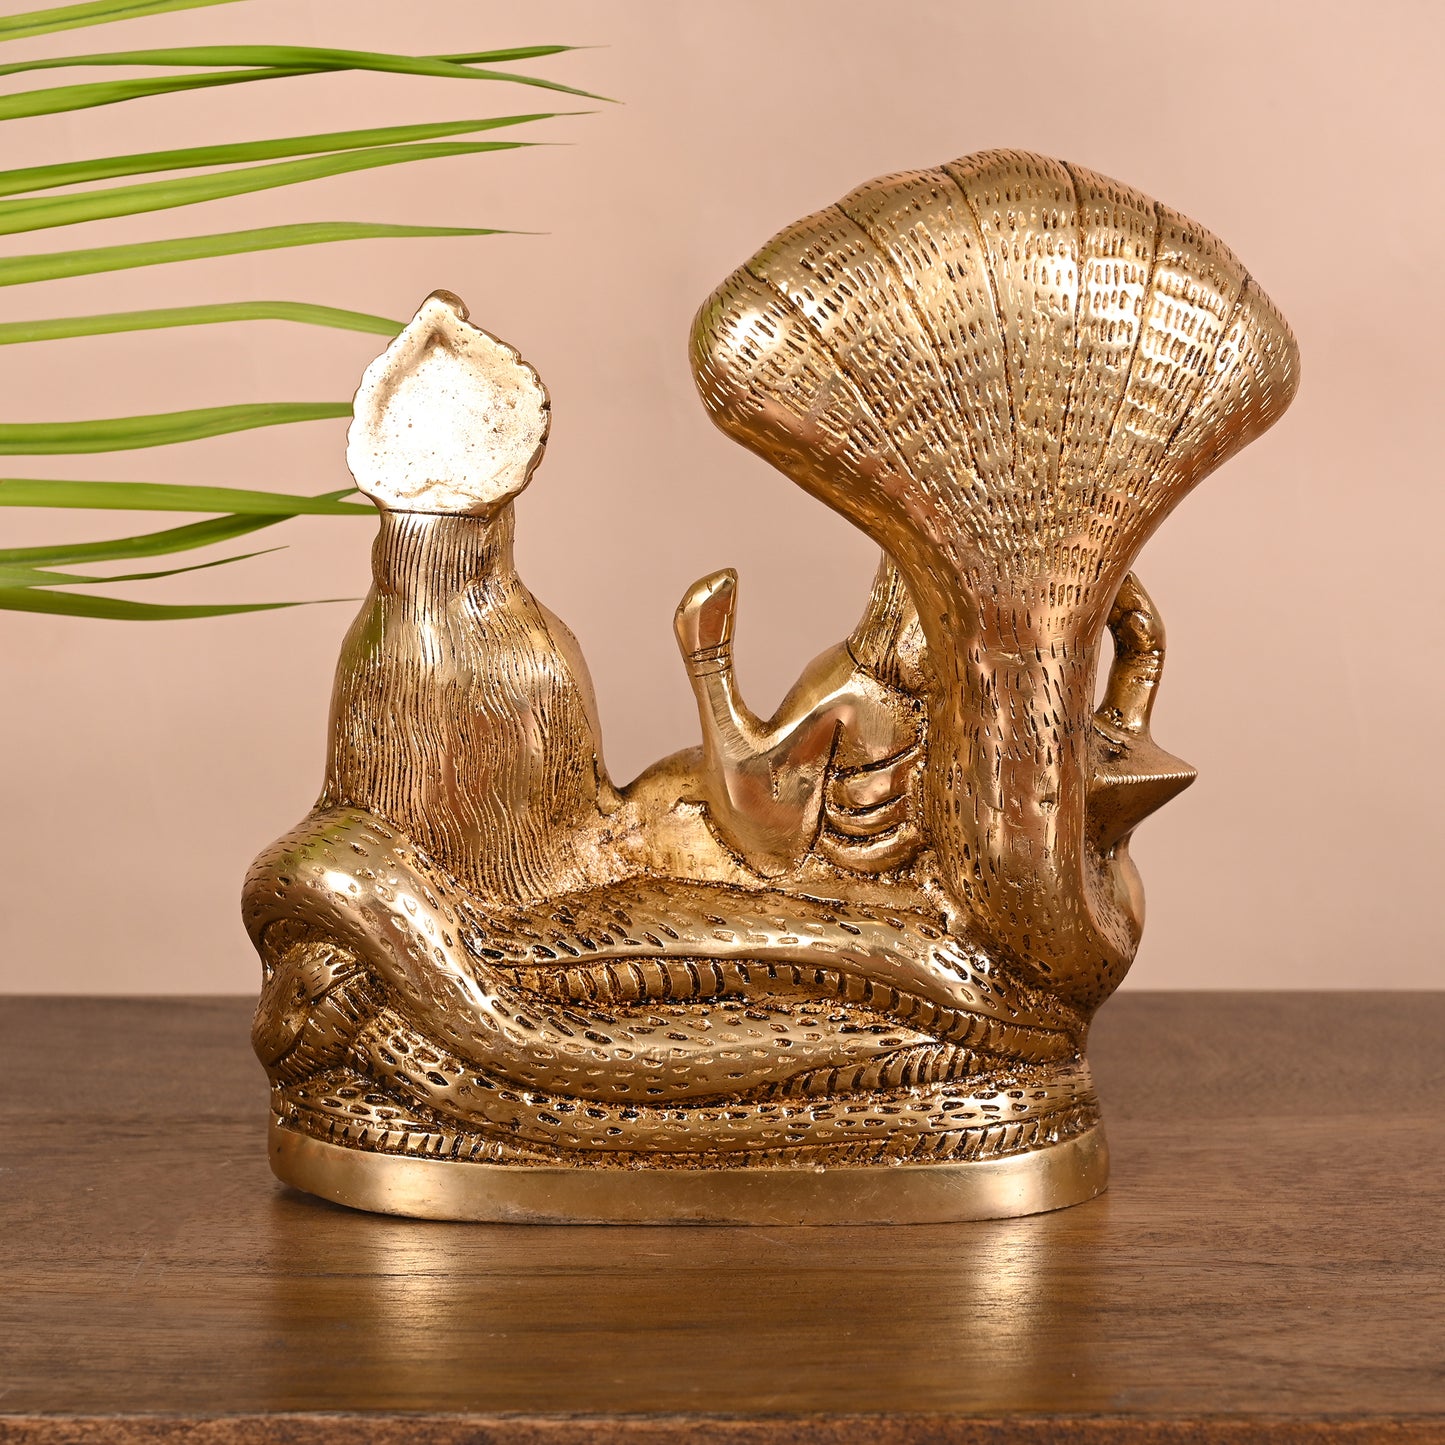 Brass Vishnu Laxmi Murti (8")